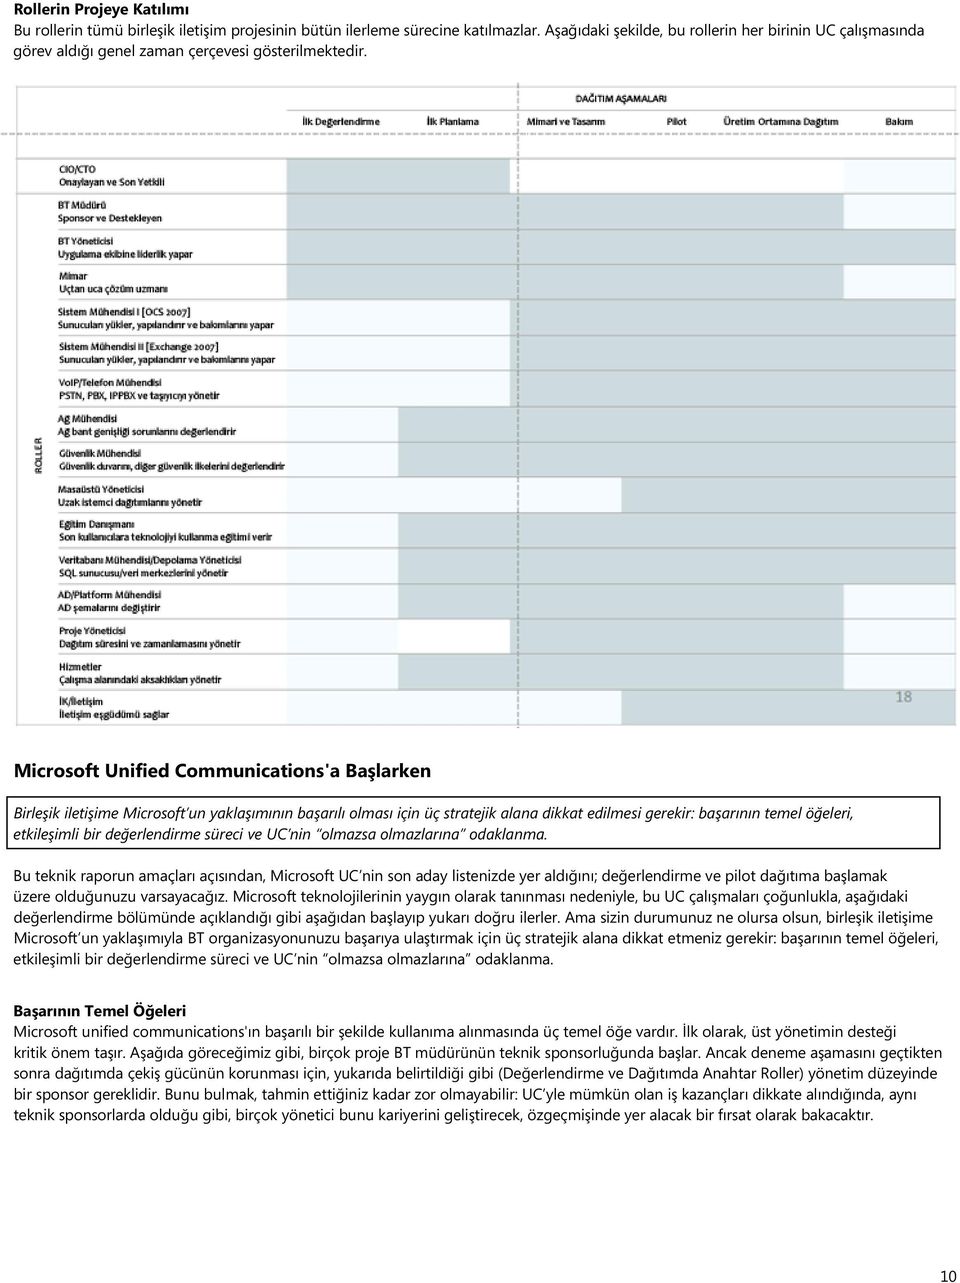 Microsoft Unified Communications'a Başlarken Birleşik iletişime Microsoft un yaklaşımının başarılı olması için üç stratejik alana dikkat edilmesi gerekir: başarının temel öğeleri, etkileşimli bir